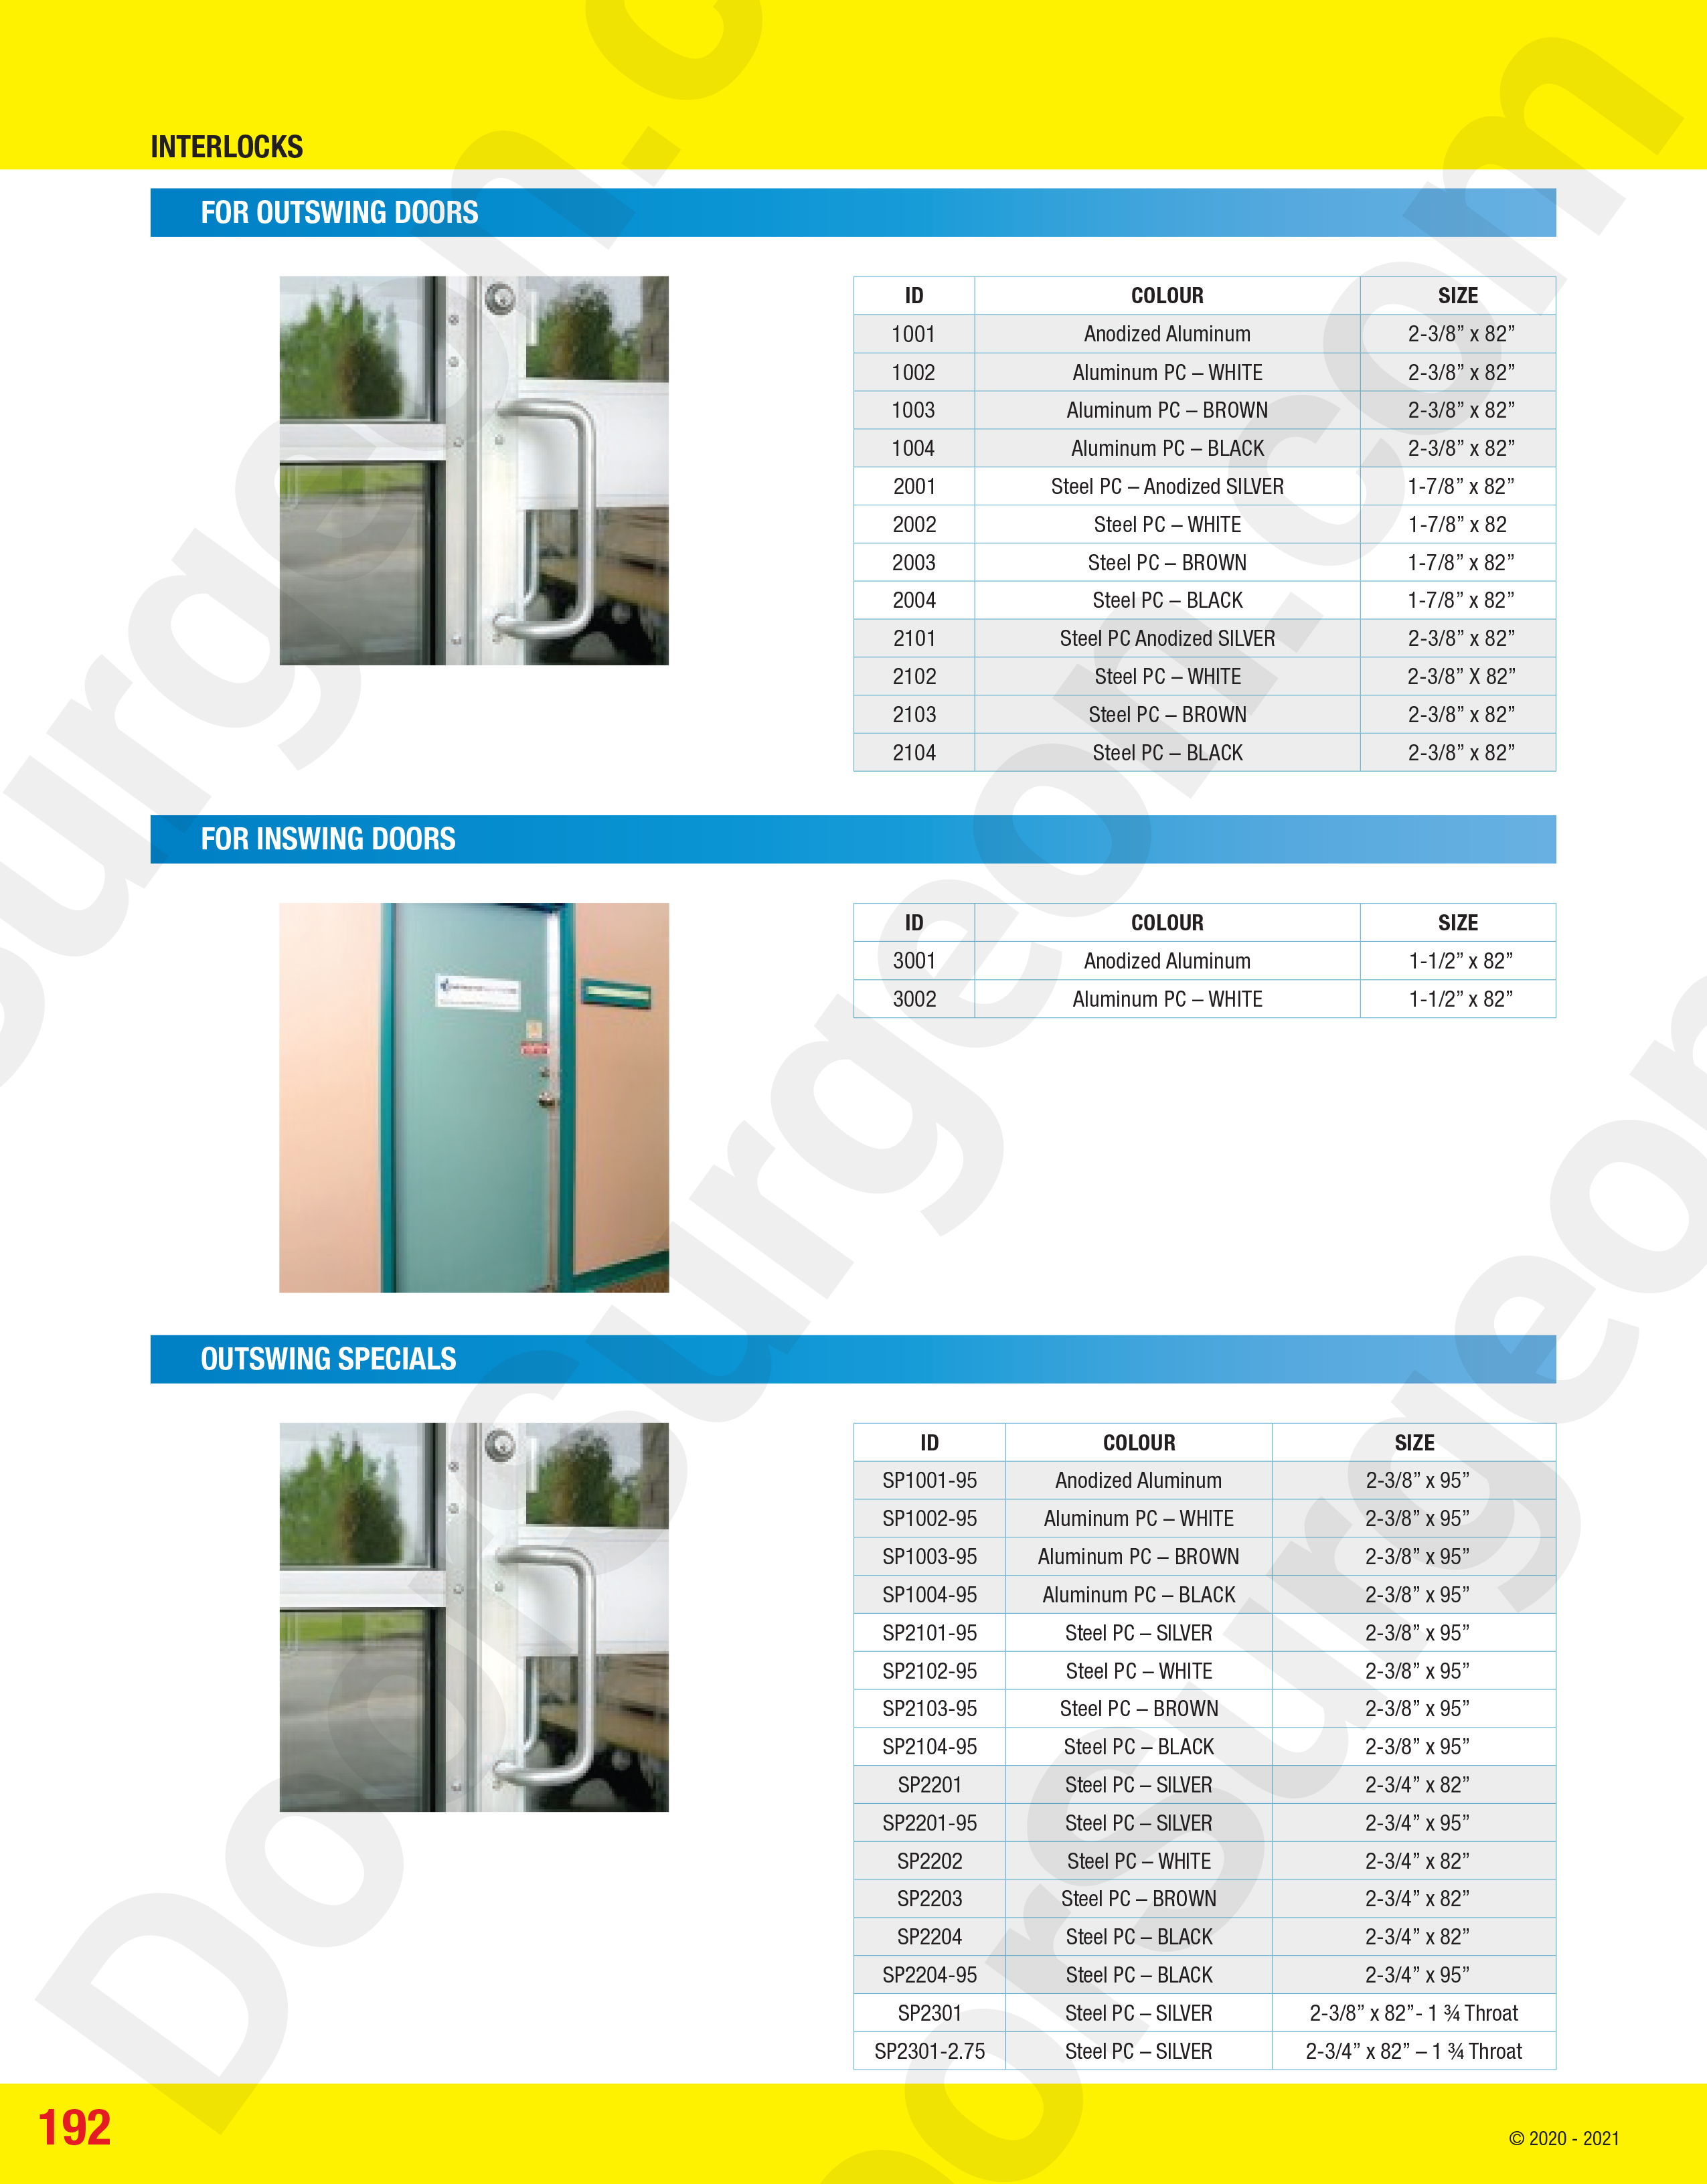 Door Surgeon commercial door edge protection sales and installations.